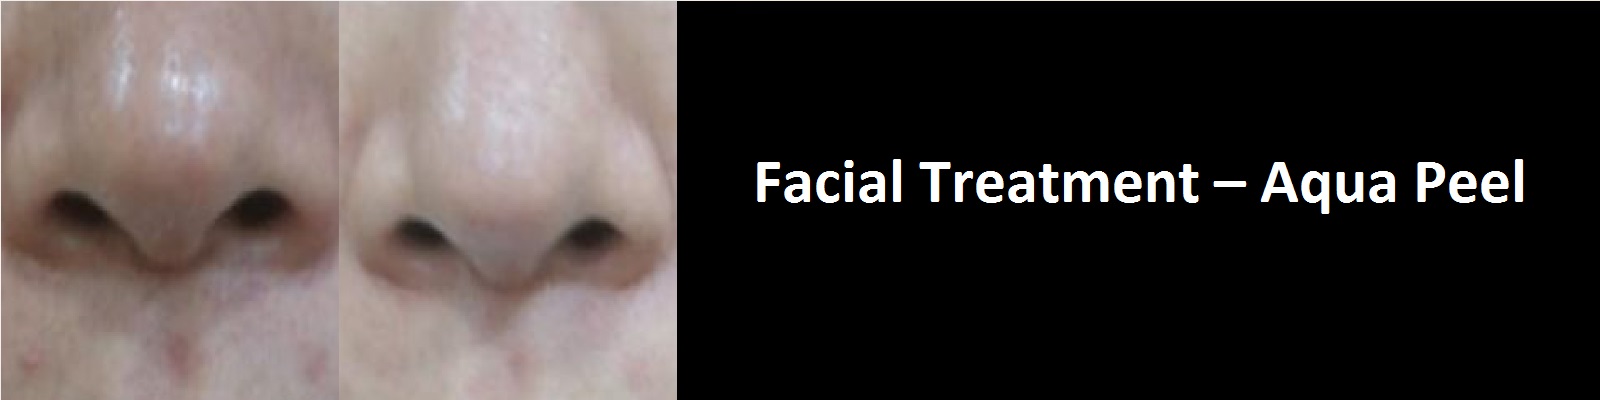 facial-treatment